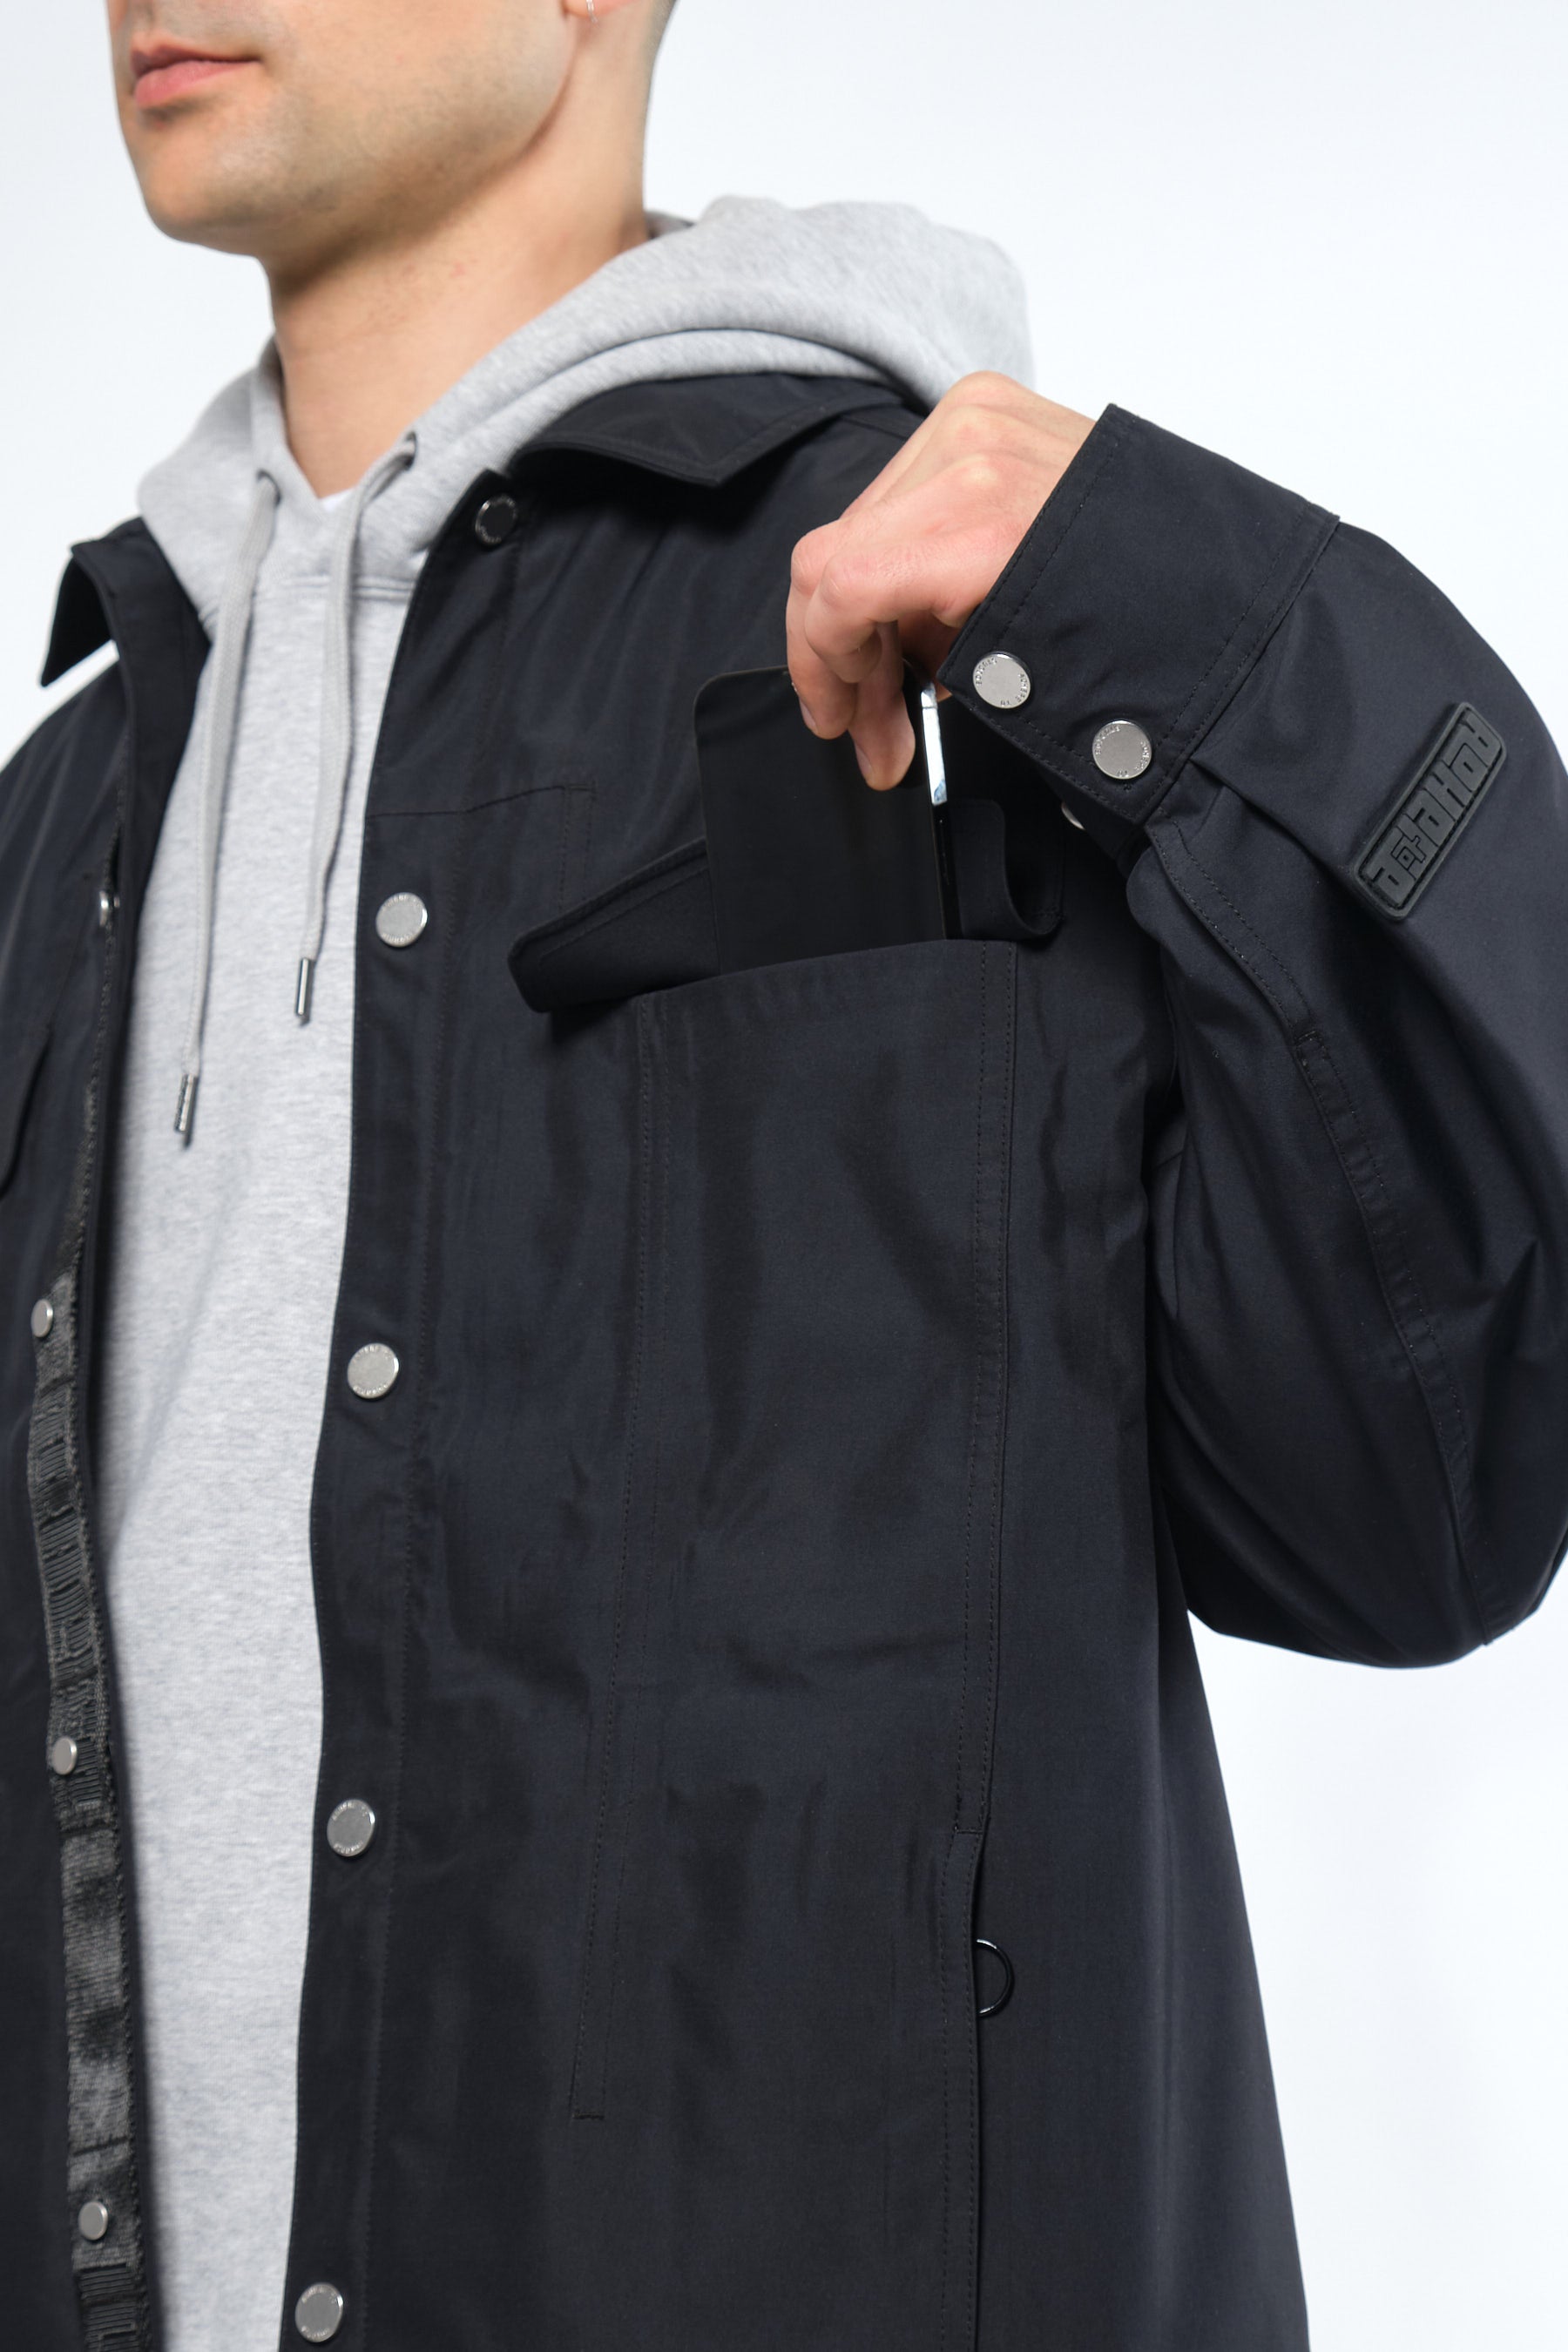  3L Black Waterproof Rain Jacket with Hood - Adhere To  - 9